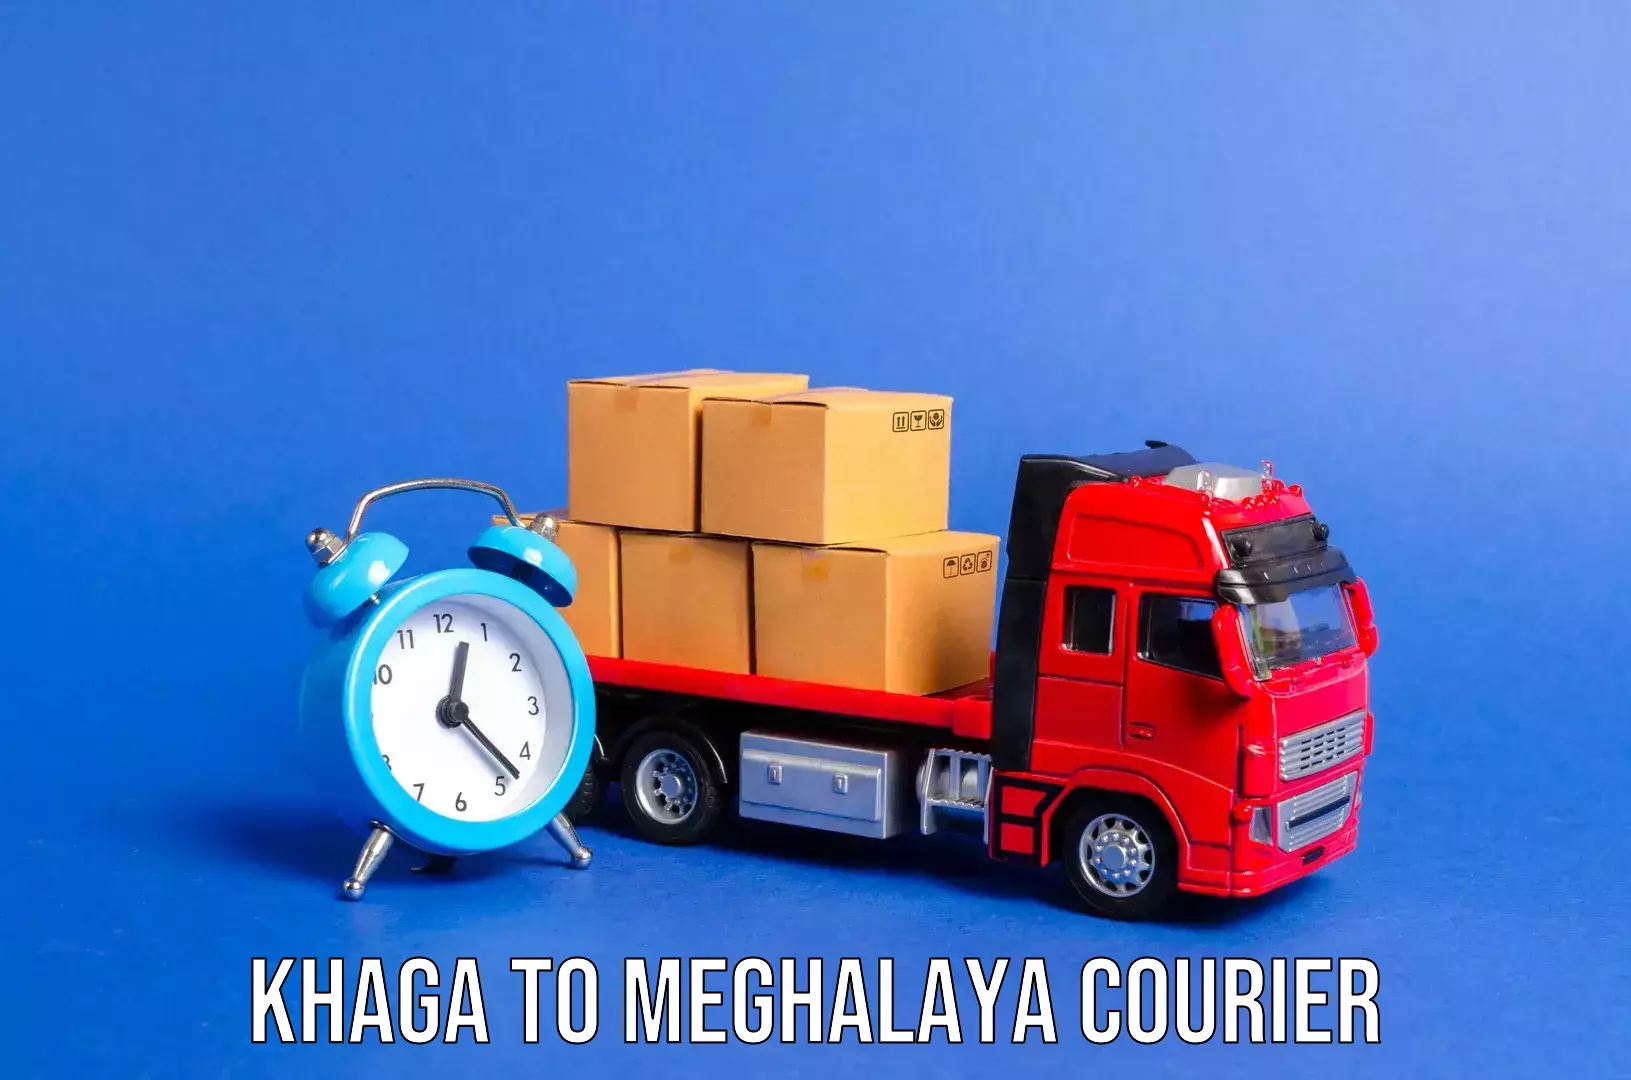 Luggage transport operations Khaga to Meghalaya